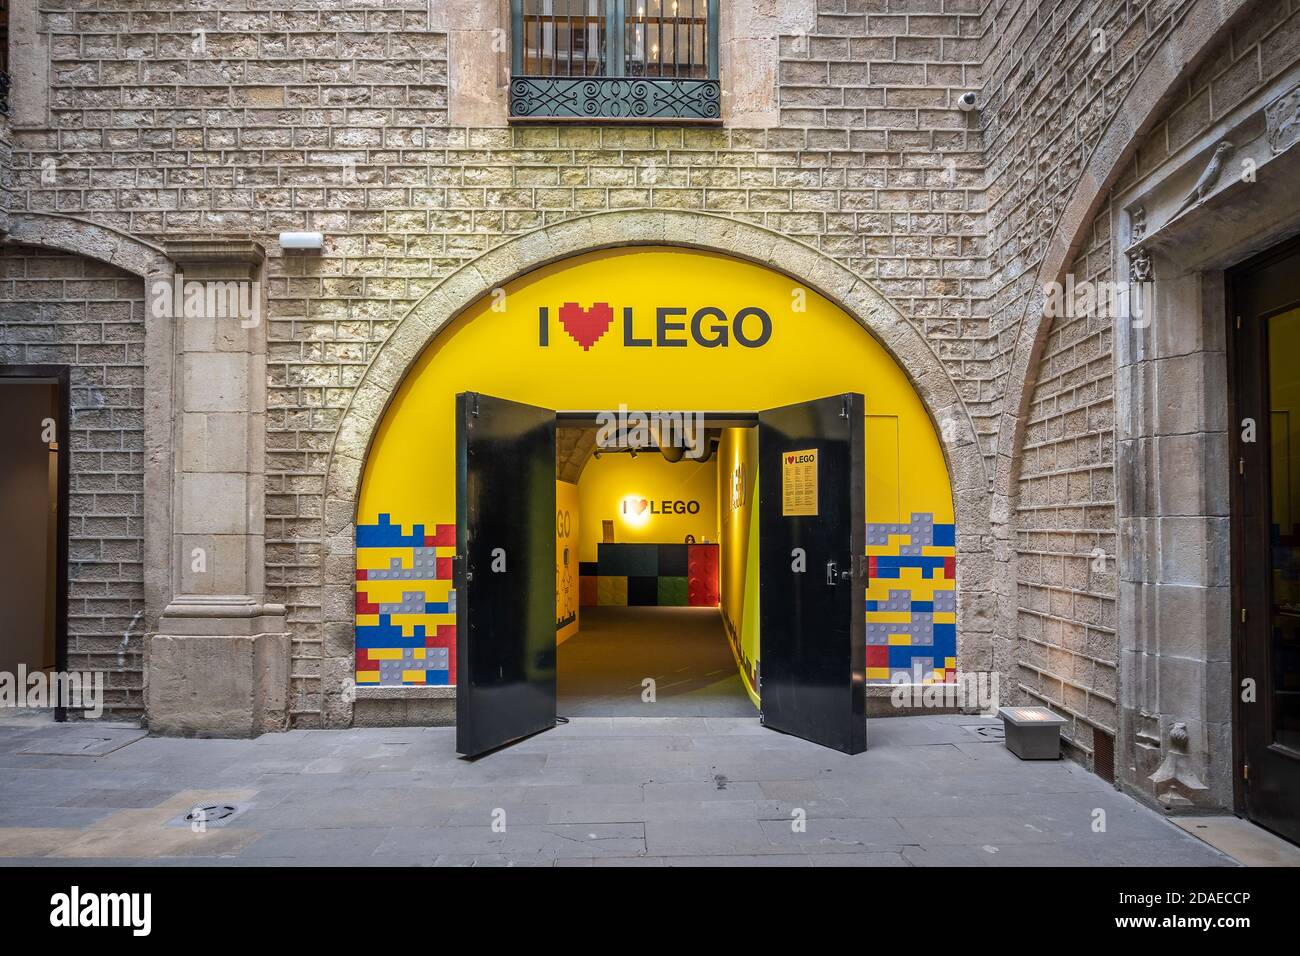 Barcelona, España - 25 de febrero de 2020: Entrada de la exposición I Love Lego cerca del centro de la ciudad Fotografía de